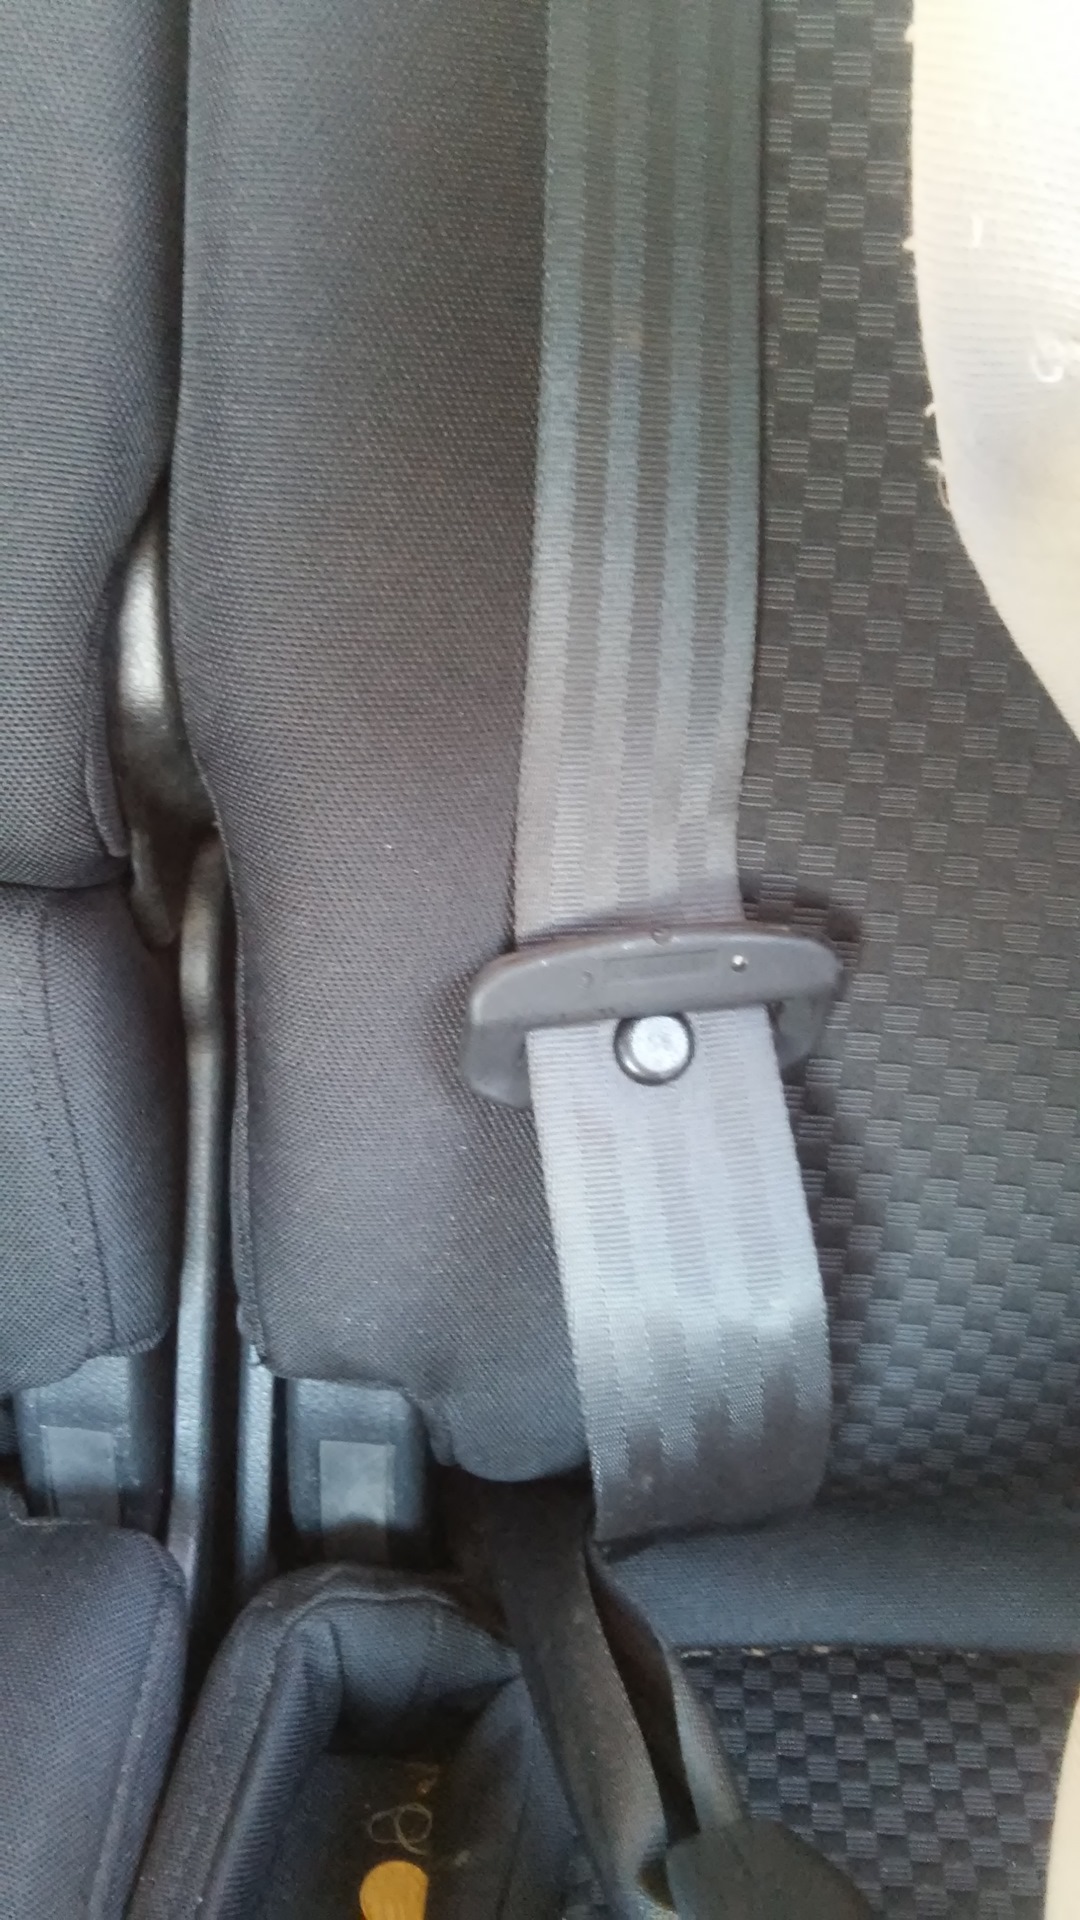 Ремень безопасности передних сидений